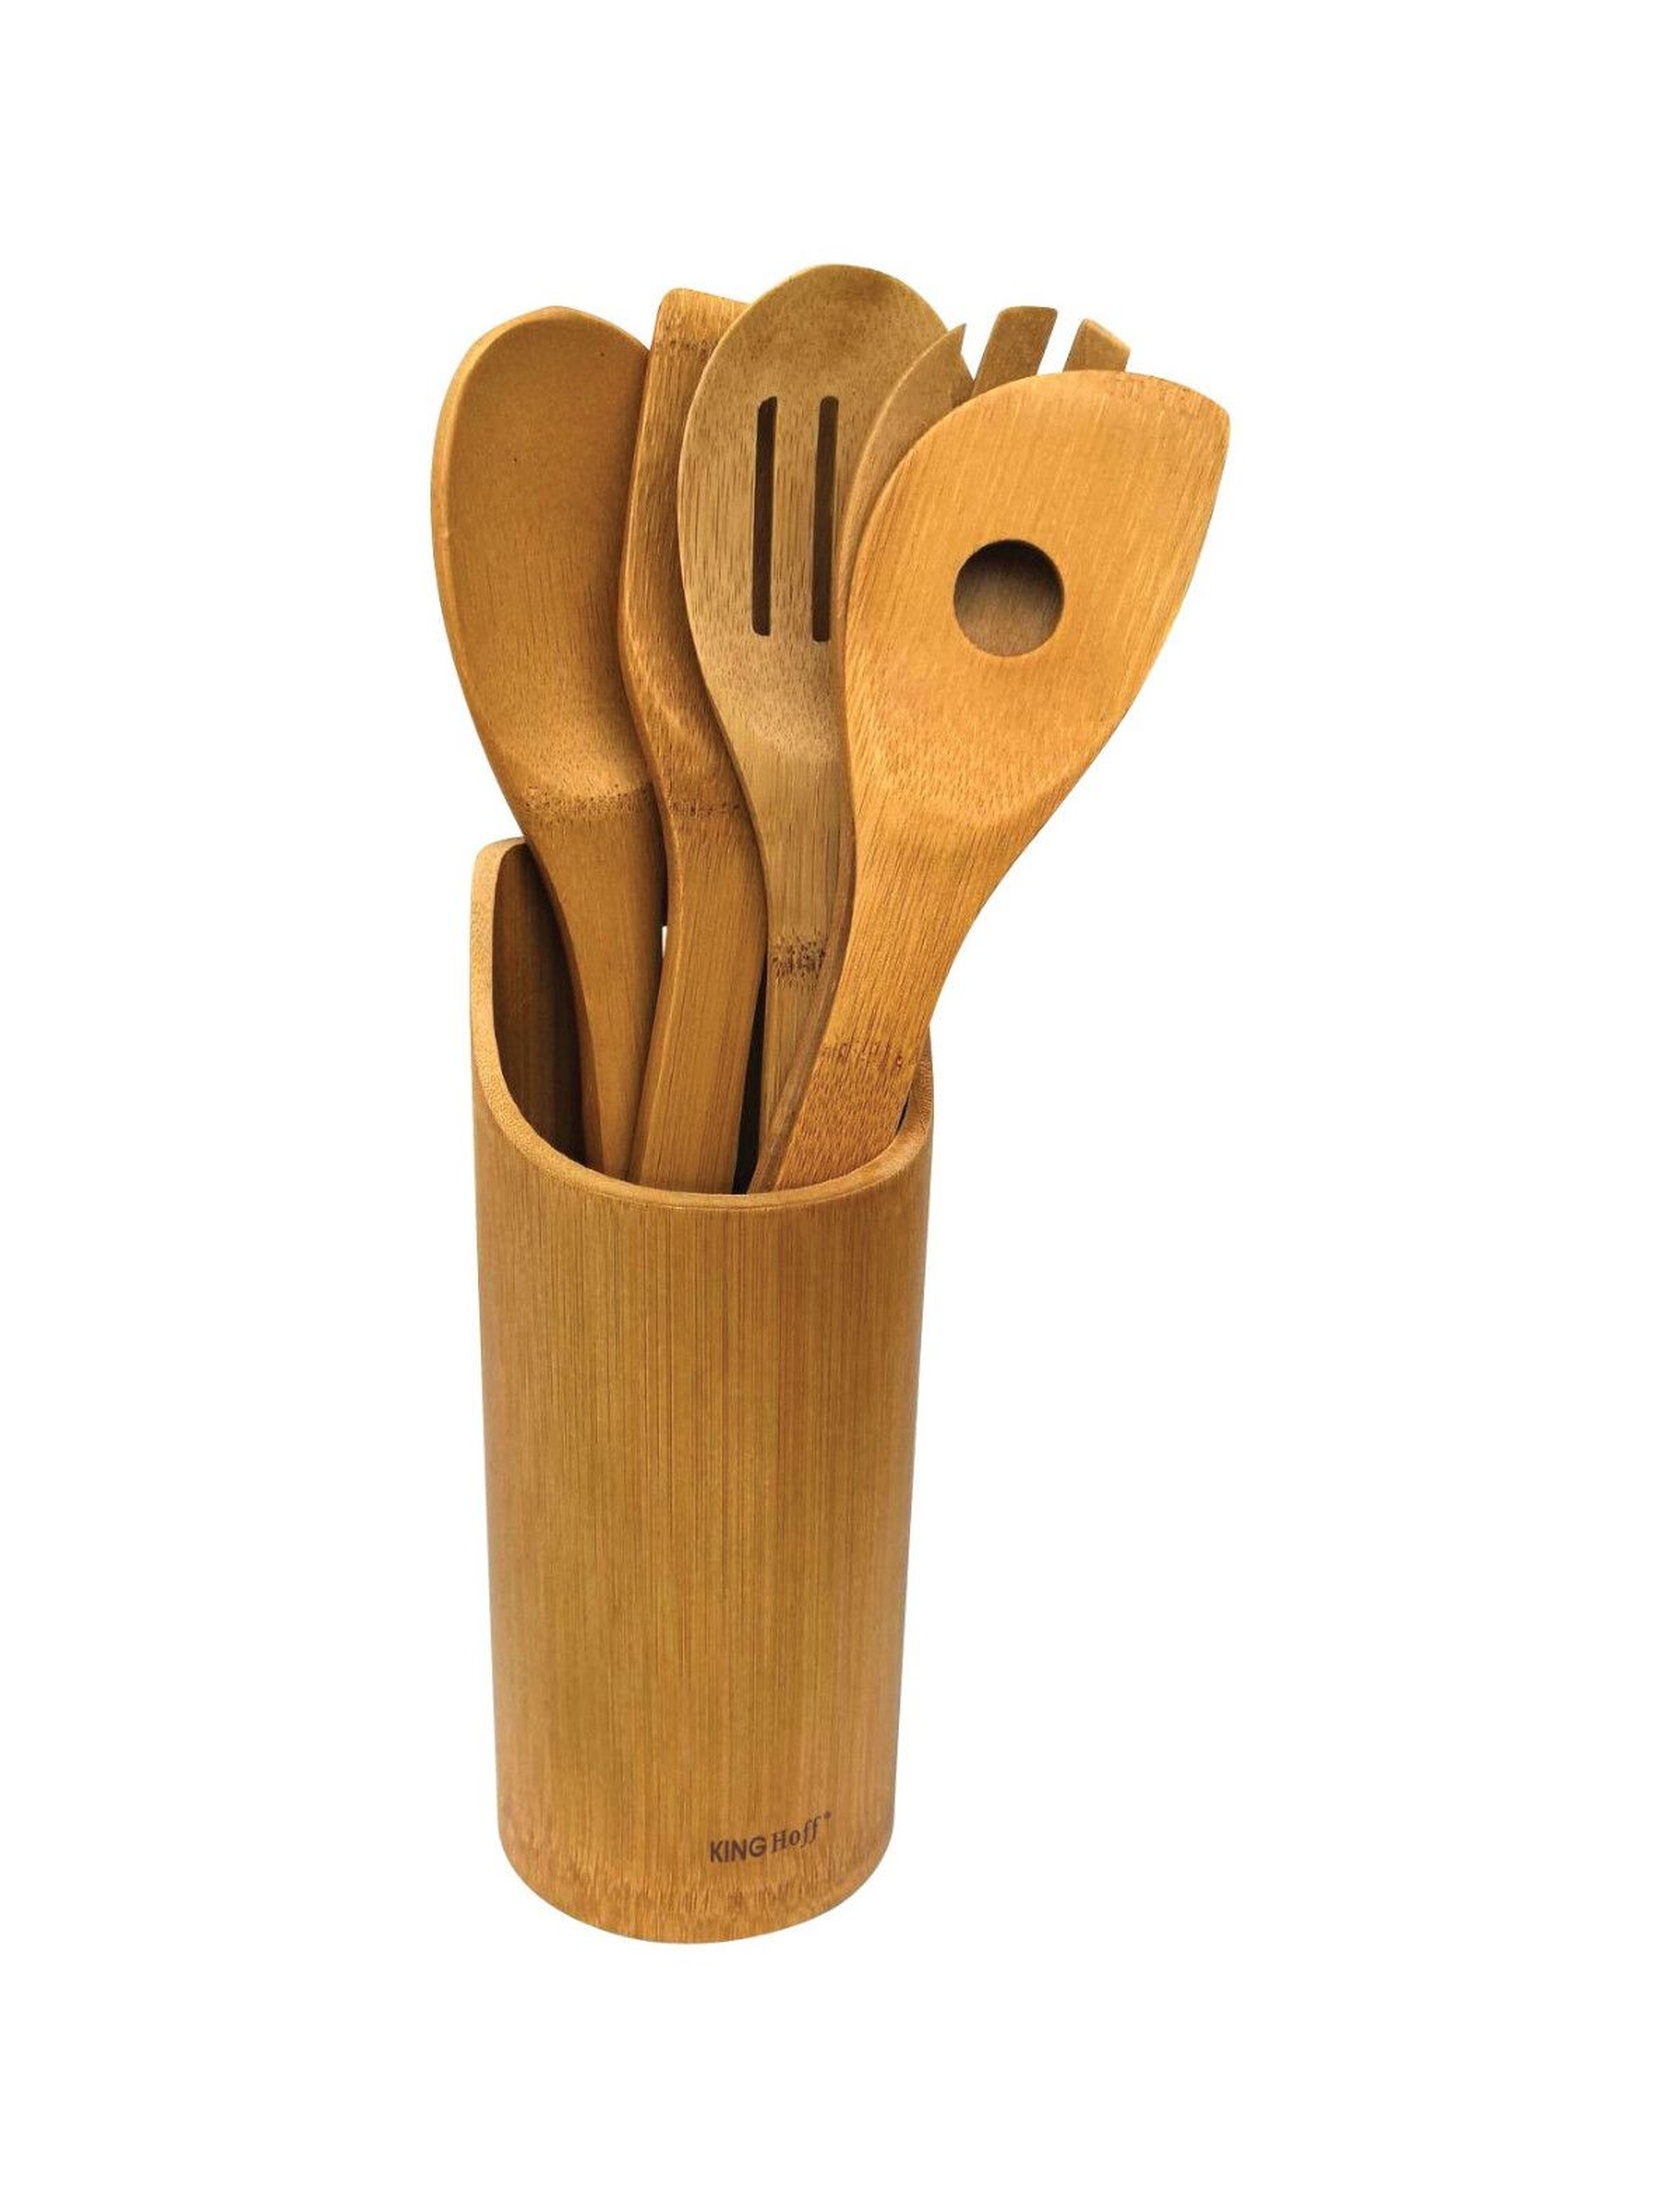 KINGHOFF Zestaw drewnianych przyborów kuchennych 6 elementów